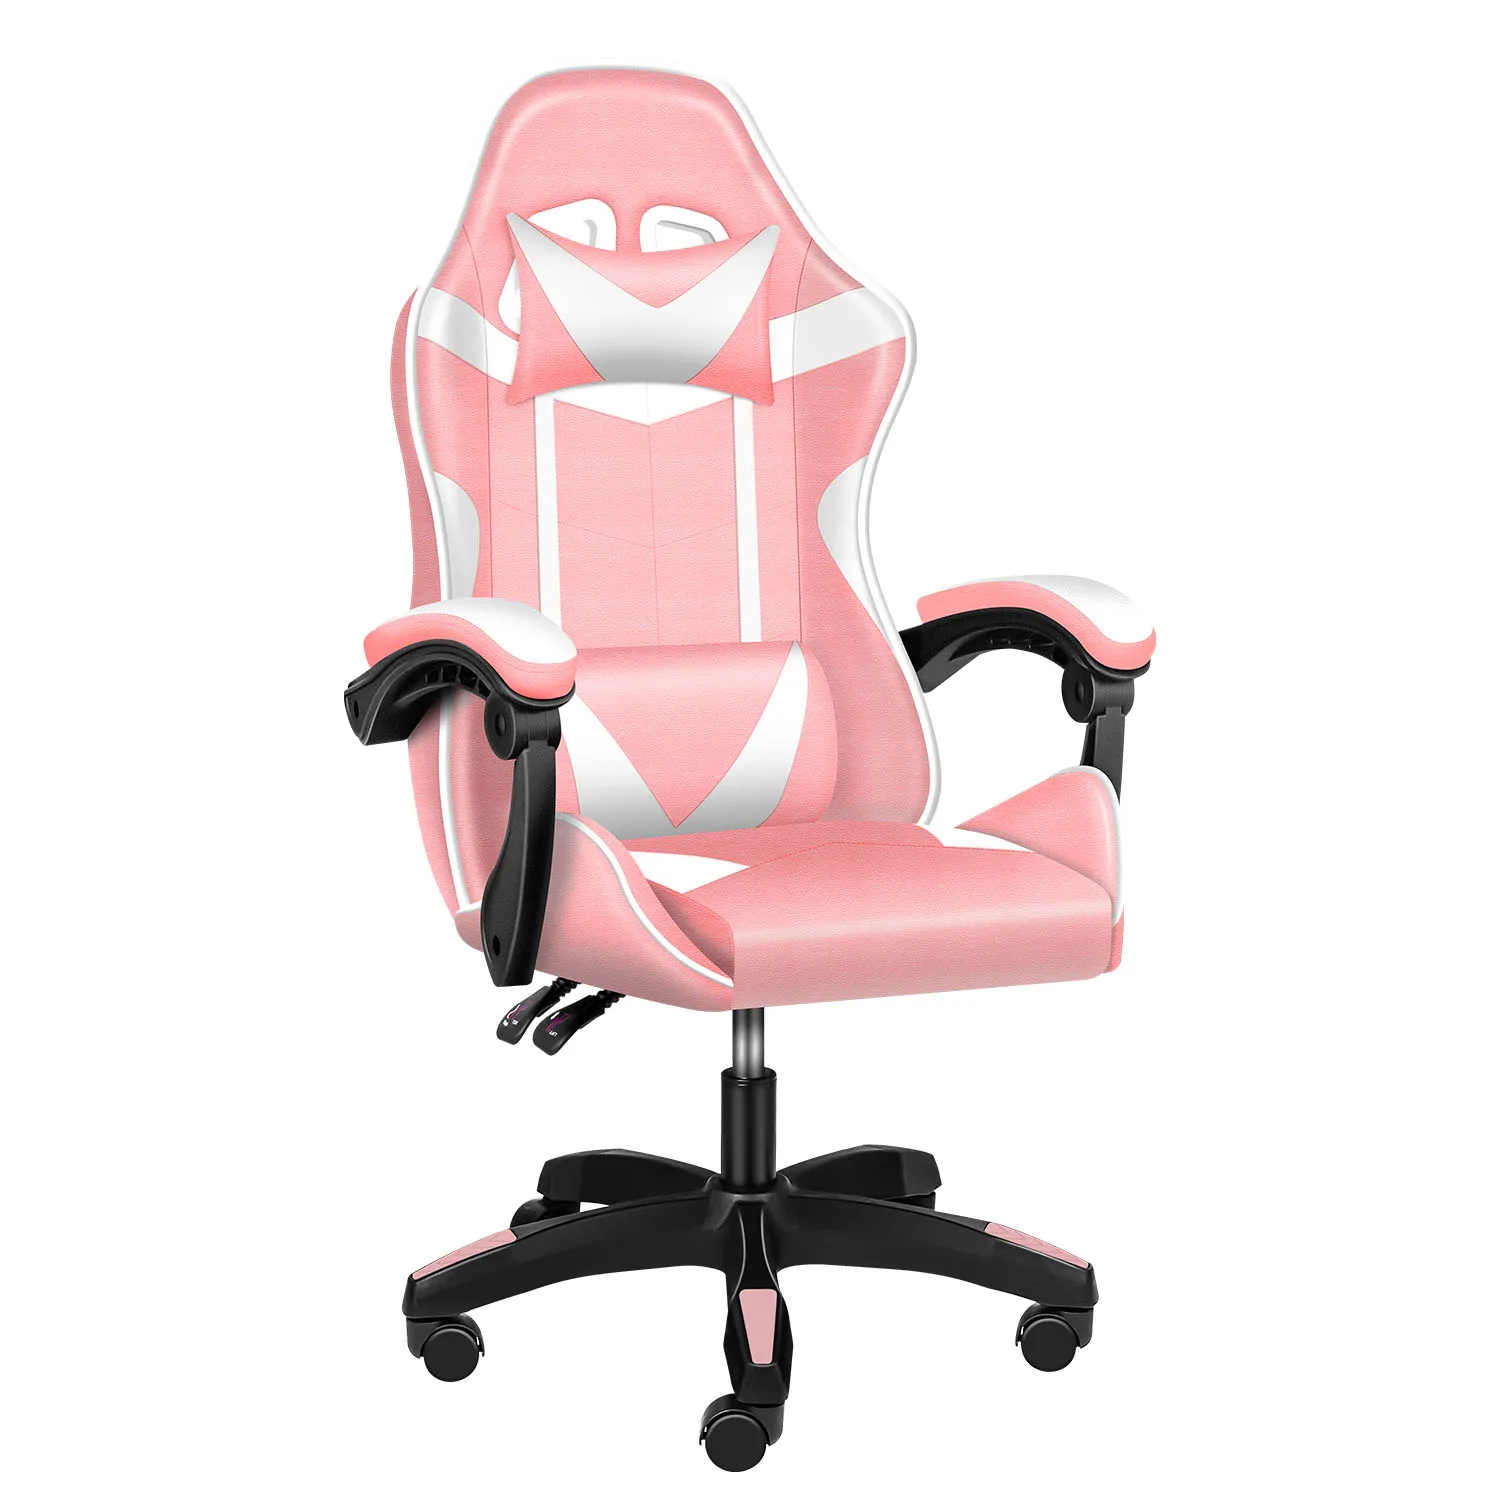 

YSSOA Height Adjustable Swivel Recliner Racing Office Computer Ergonomic Video Game Esports Chair W/Headrest&Lumbar Pillow